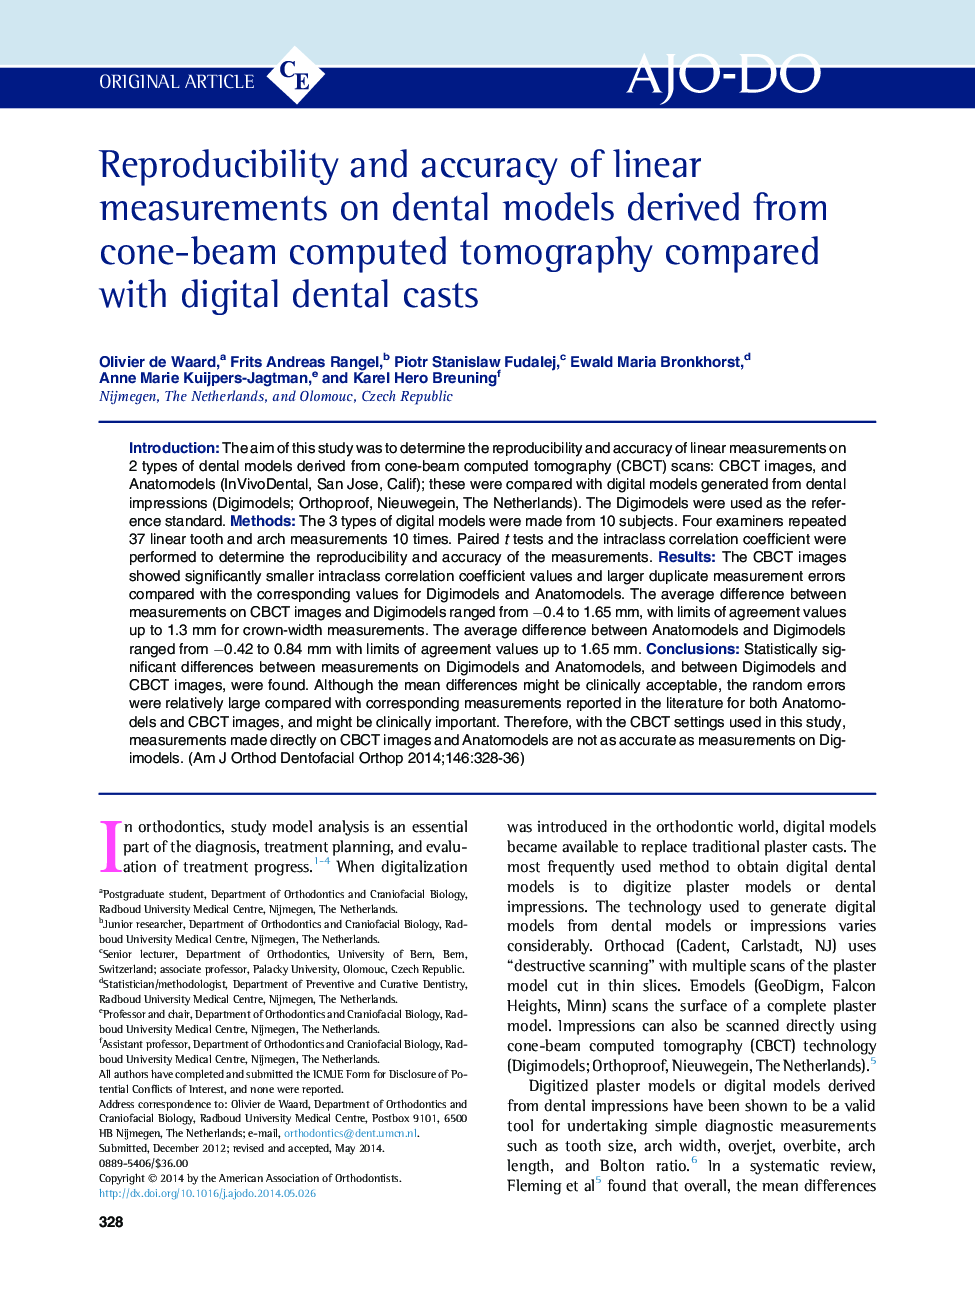 تکرارپذیری و دقت اندازه گیری های خطی بر روی مدل های دندانی که از توموگرافی کامپیوتری پرتو مخروطی در مقایسه با کست های دندانی دیجیتال 